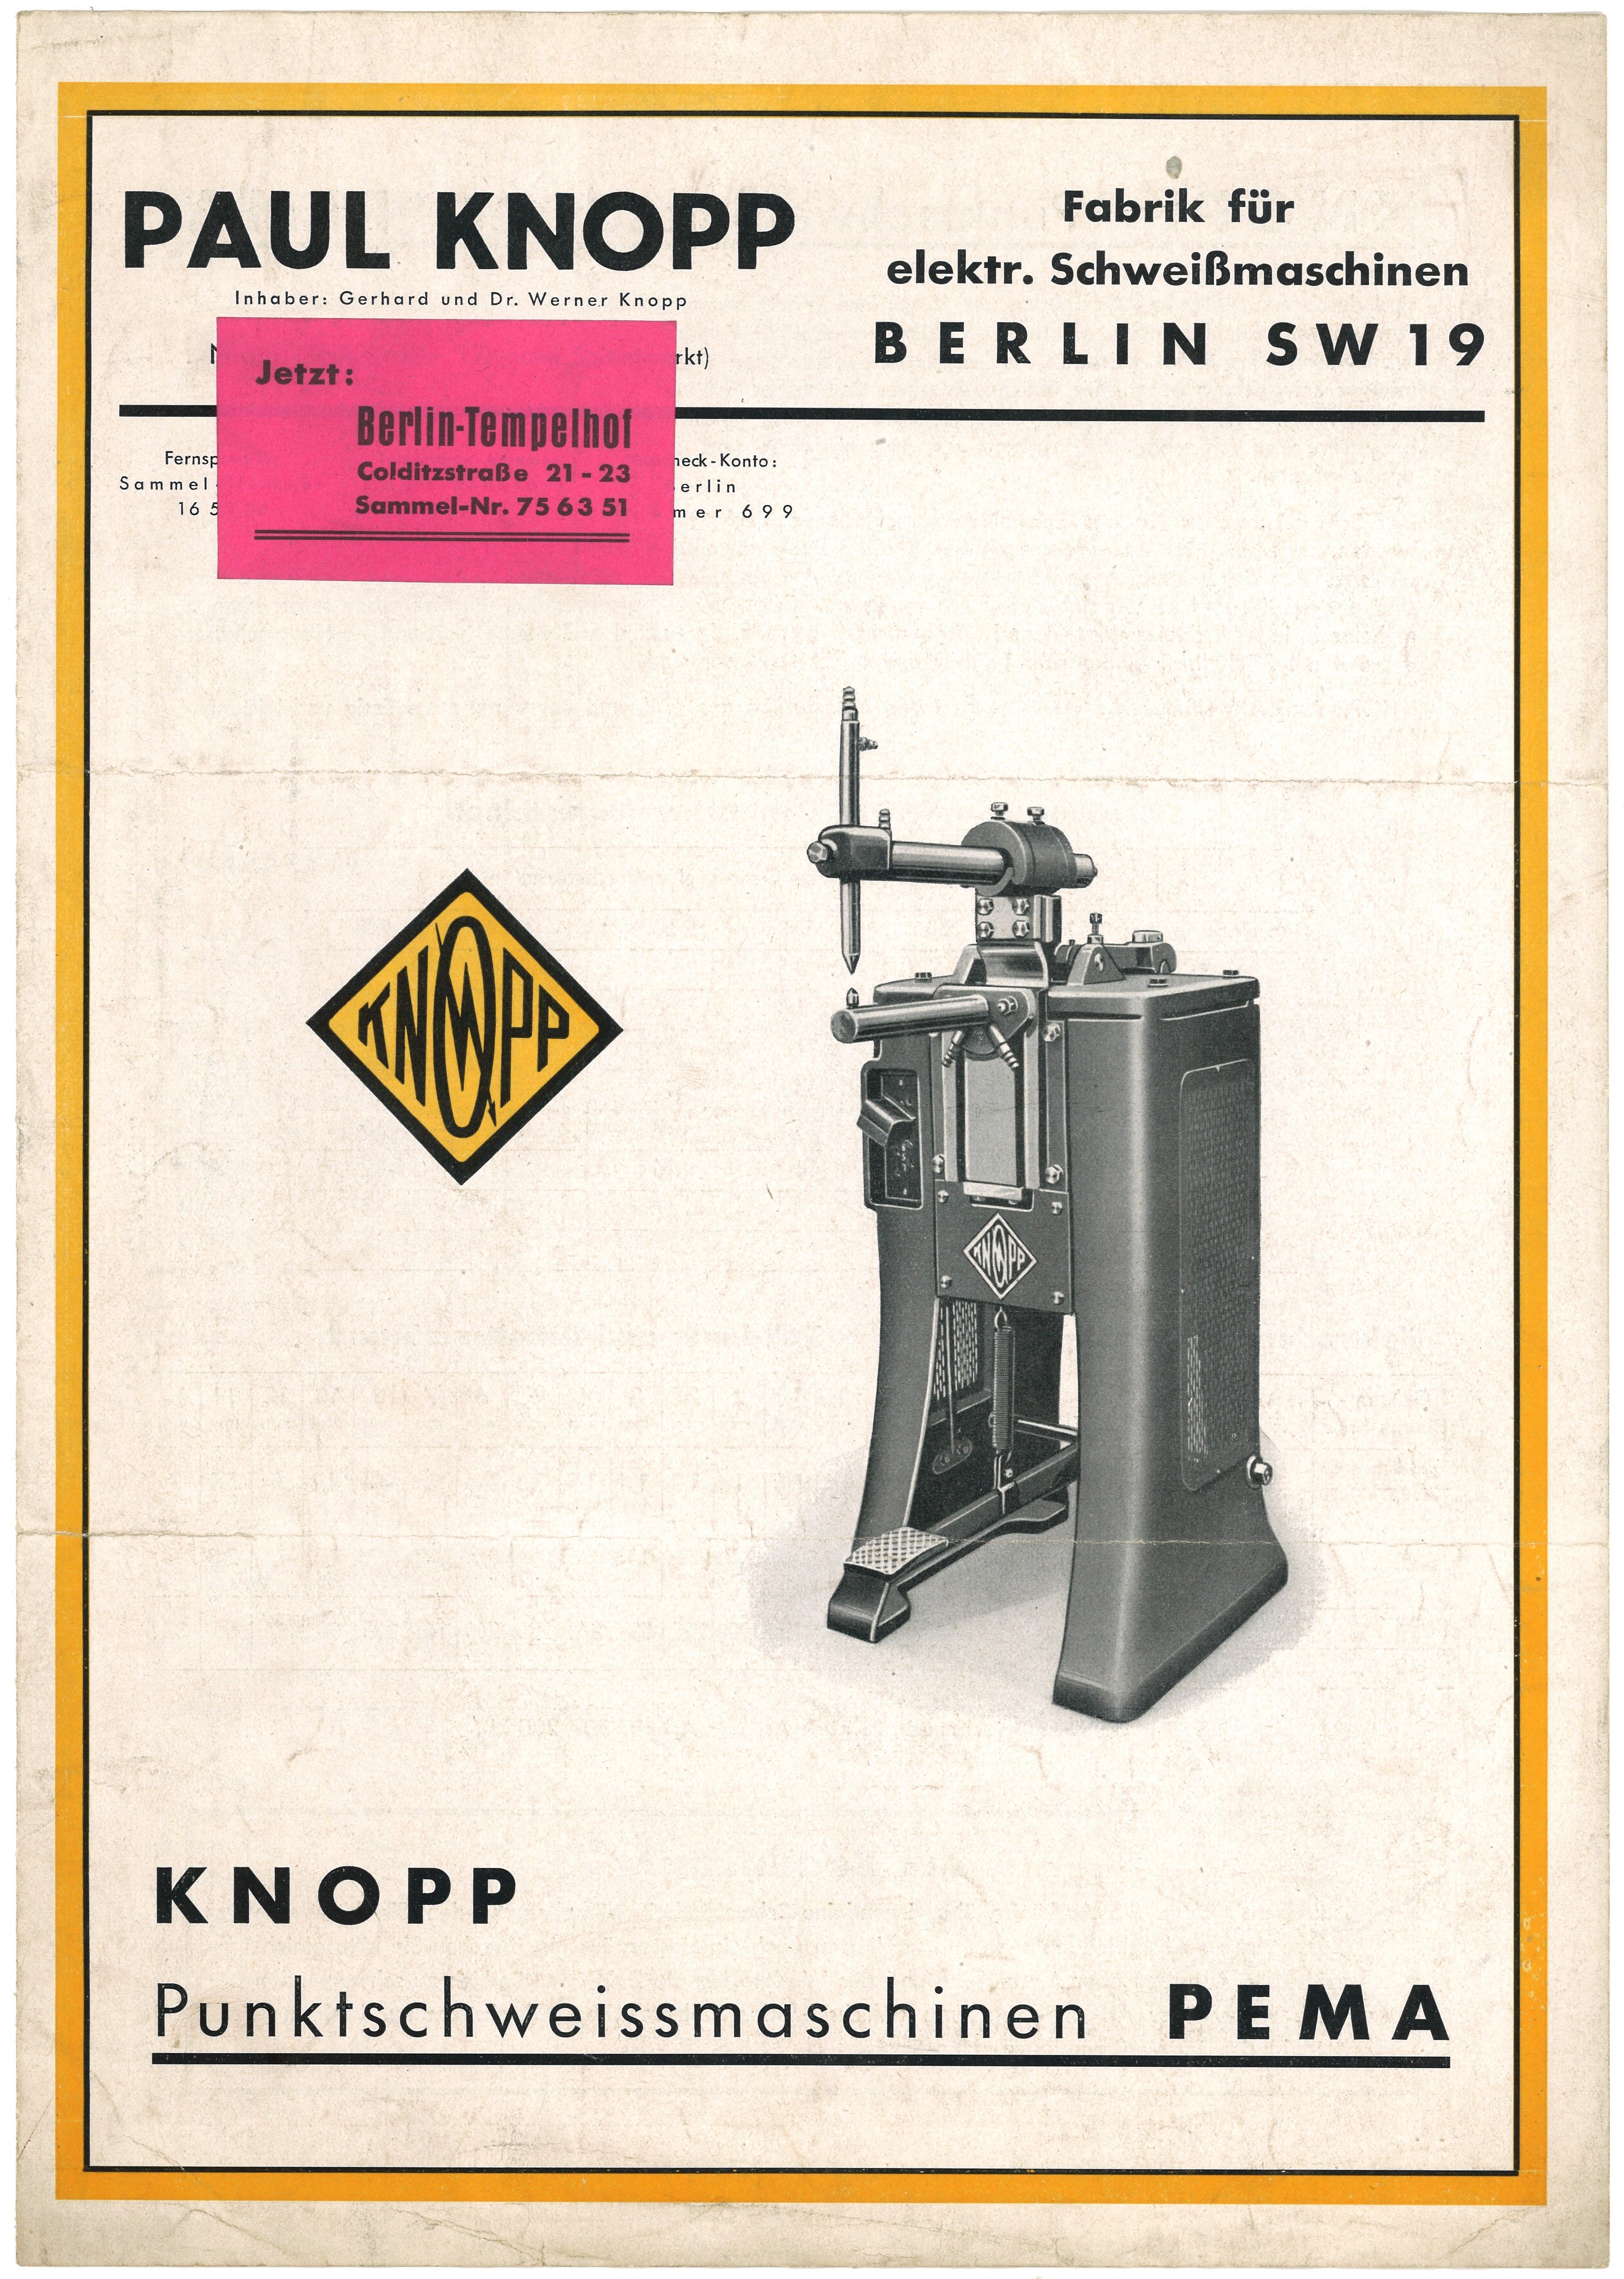 Werbeprospekt der Firma Paul Knopp in Berlin für Punktschweißmaschinen (ca. 1937) (Landesgeschichtliche Vereinigung für die Mark Brandenburg e.V., Archiv CC BY)